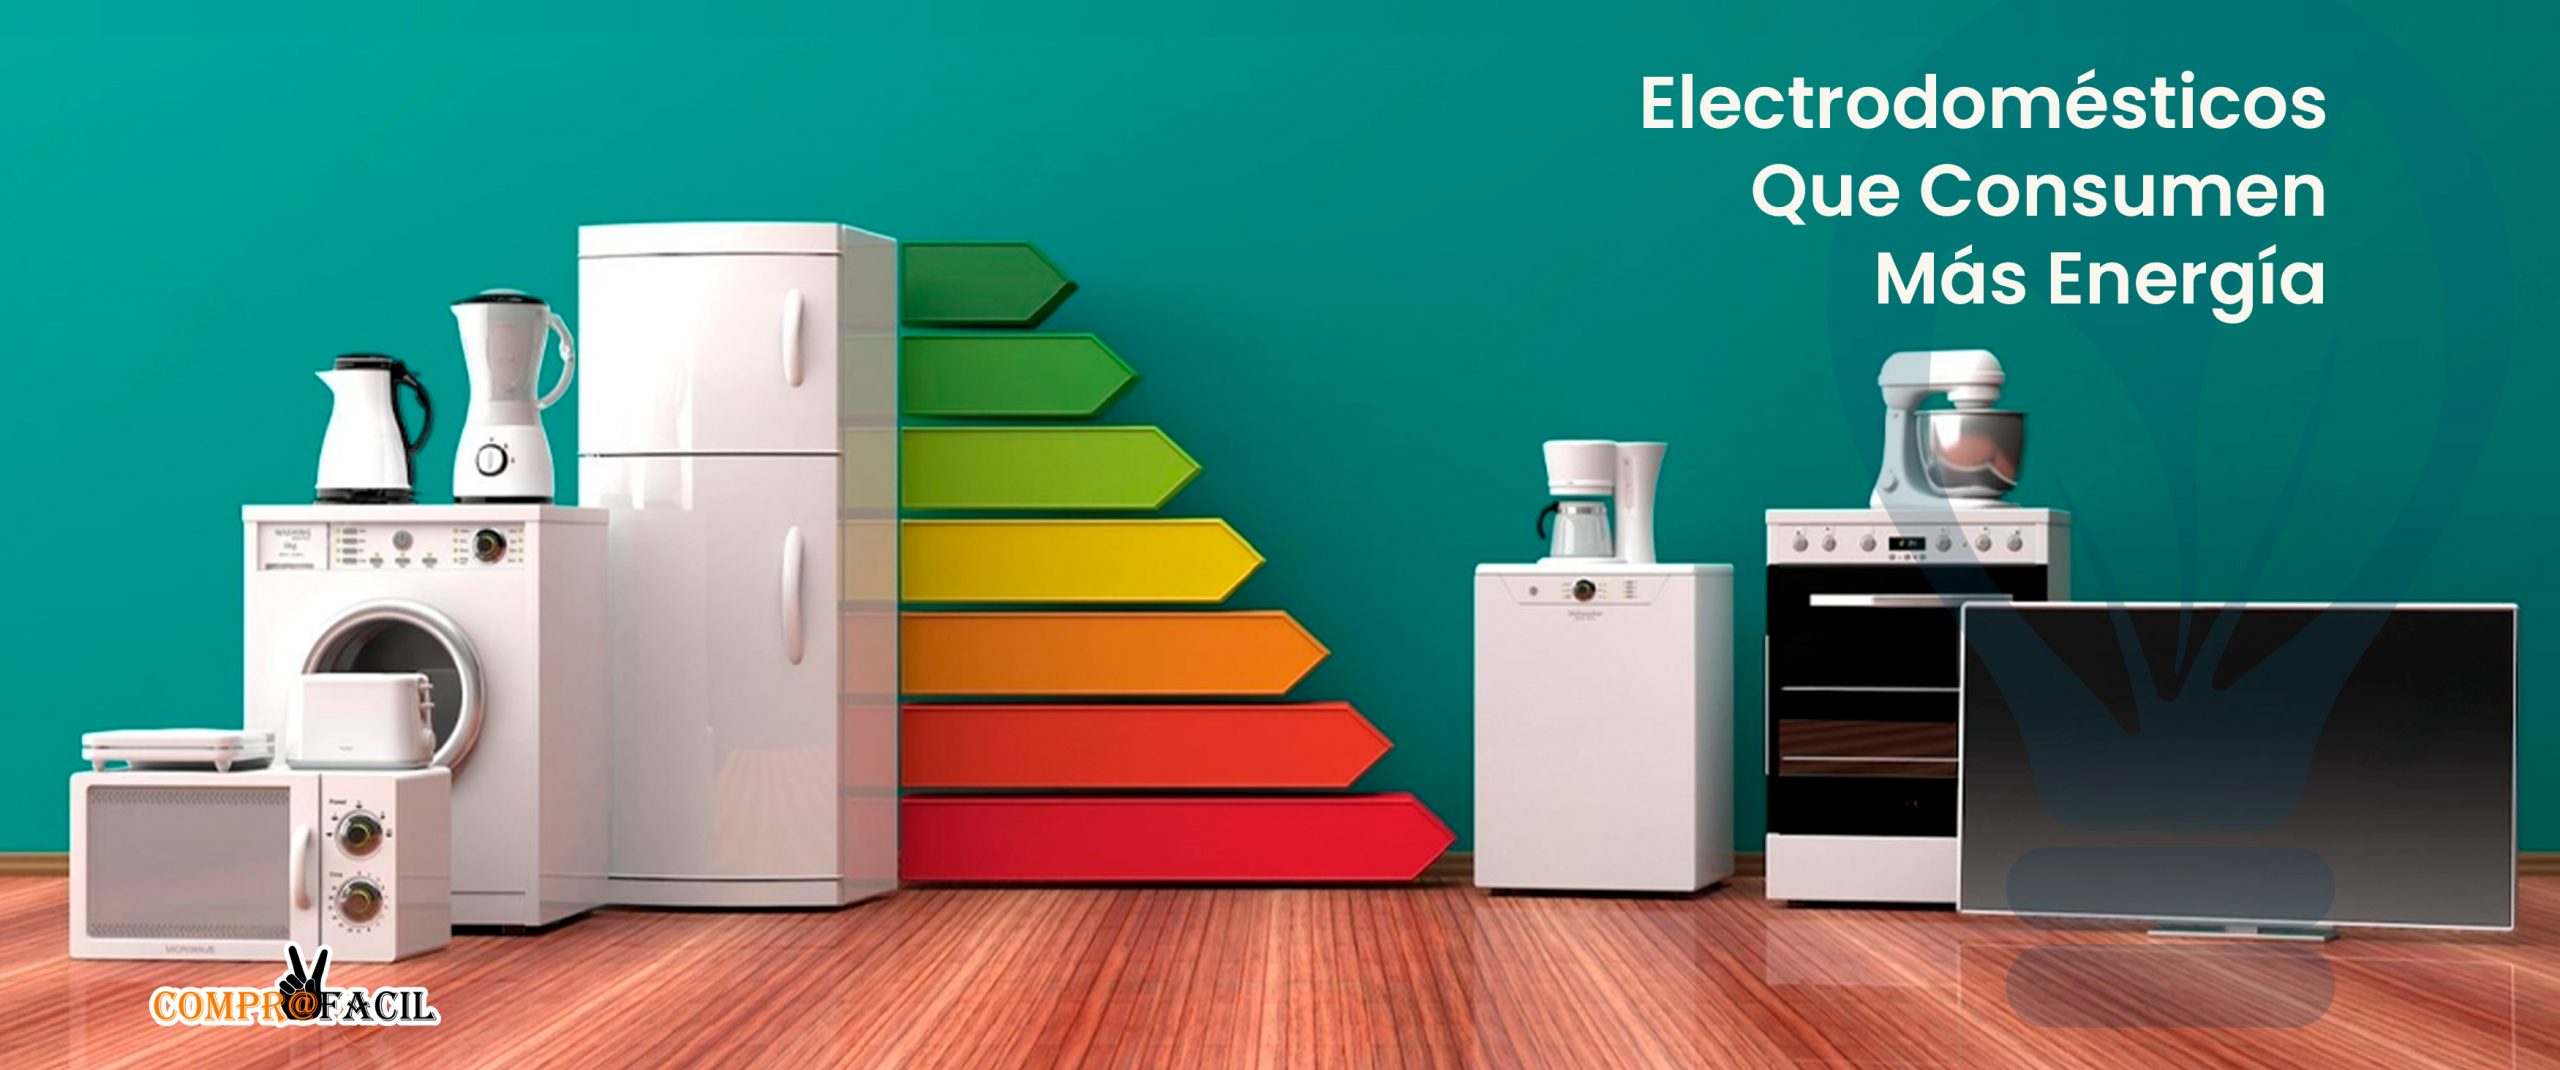 Electrodomésticos Que Consumen Más Energía